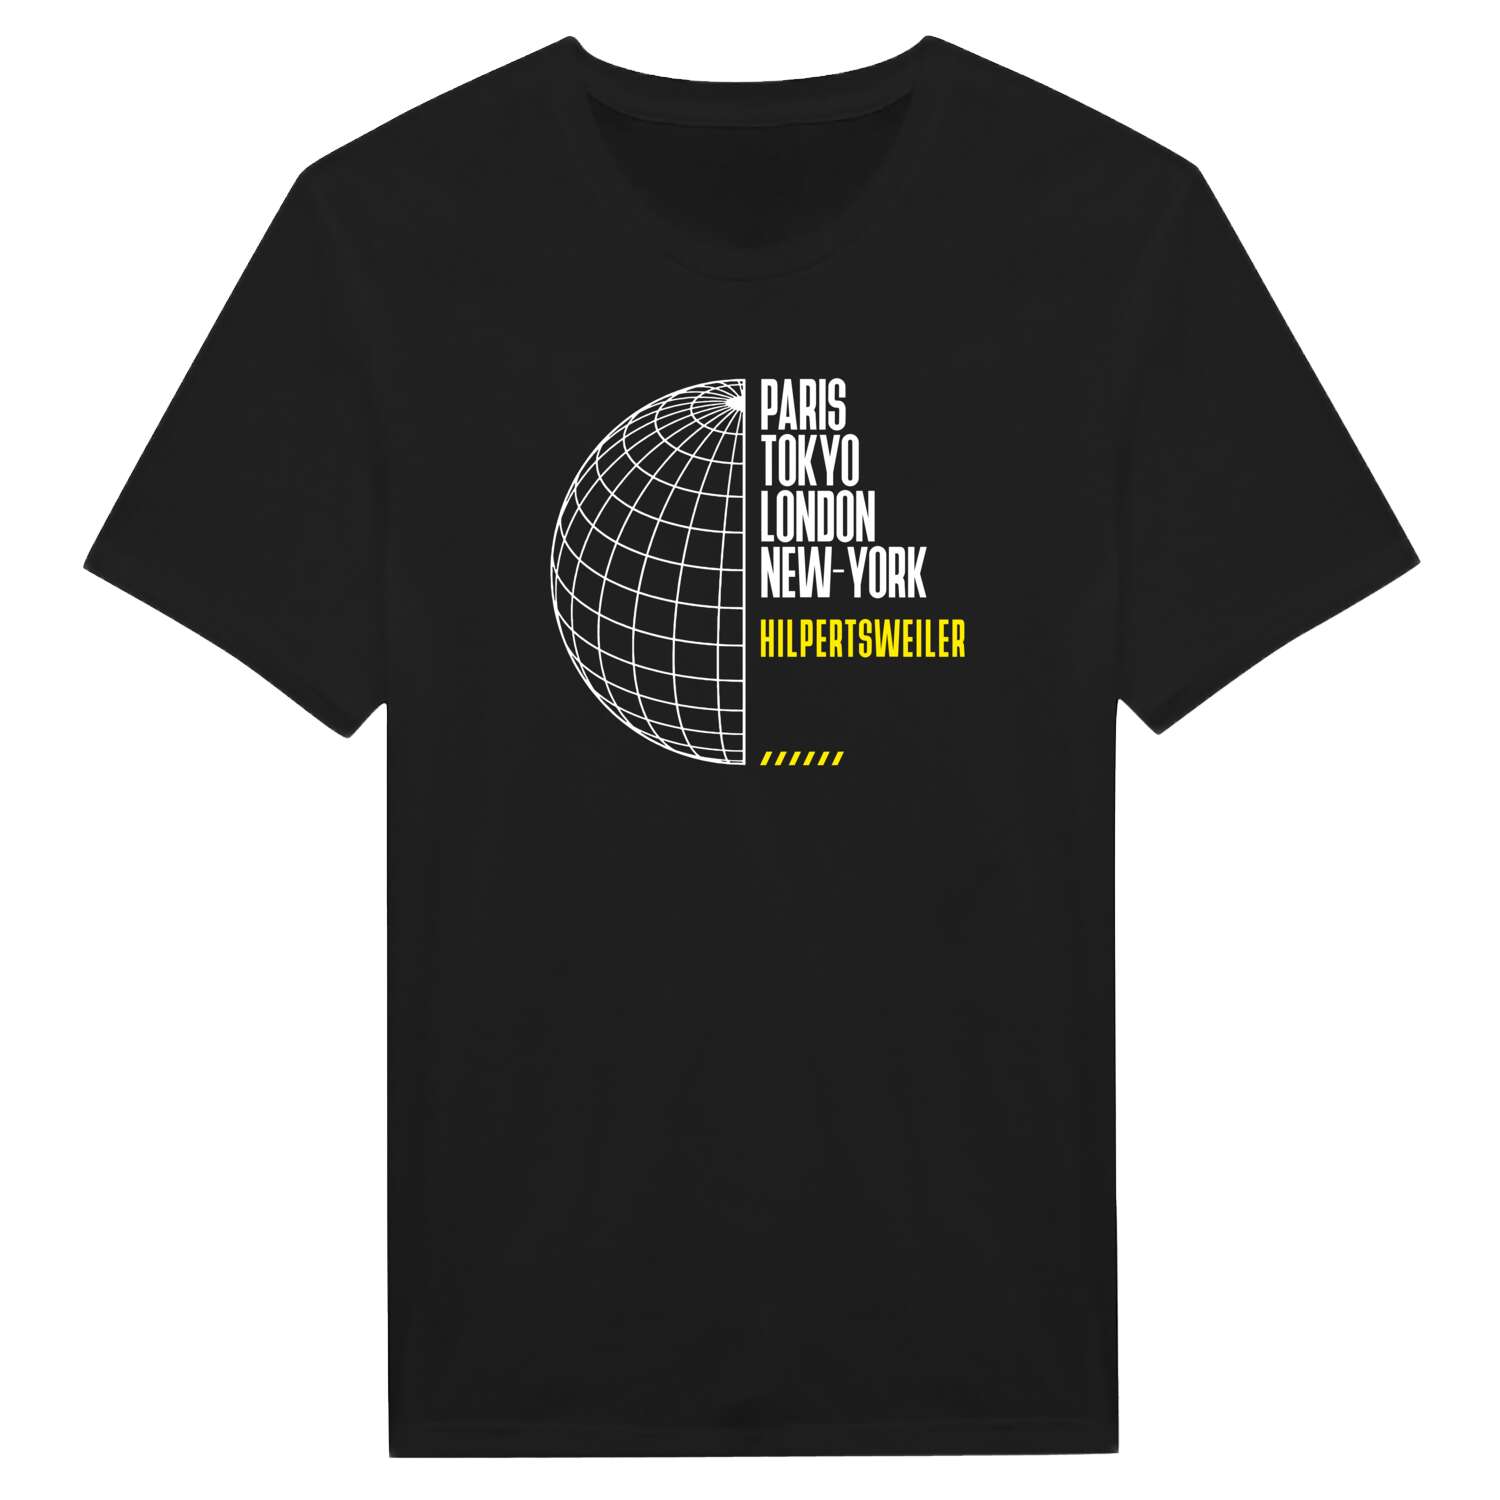 Hilpertsweiler T-Shirt »Paris Tokyo London«